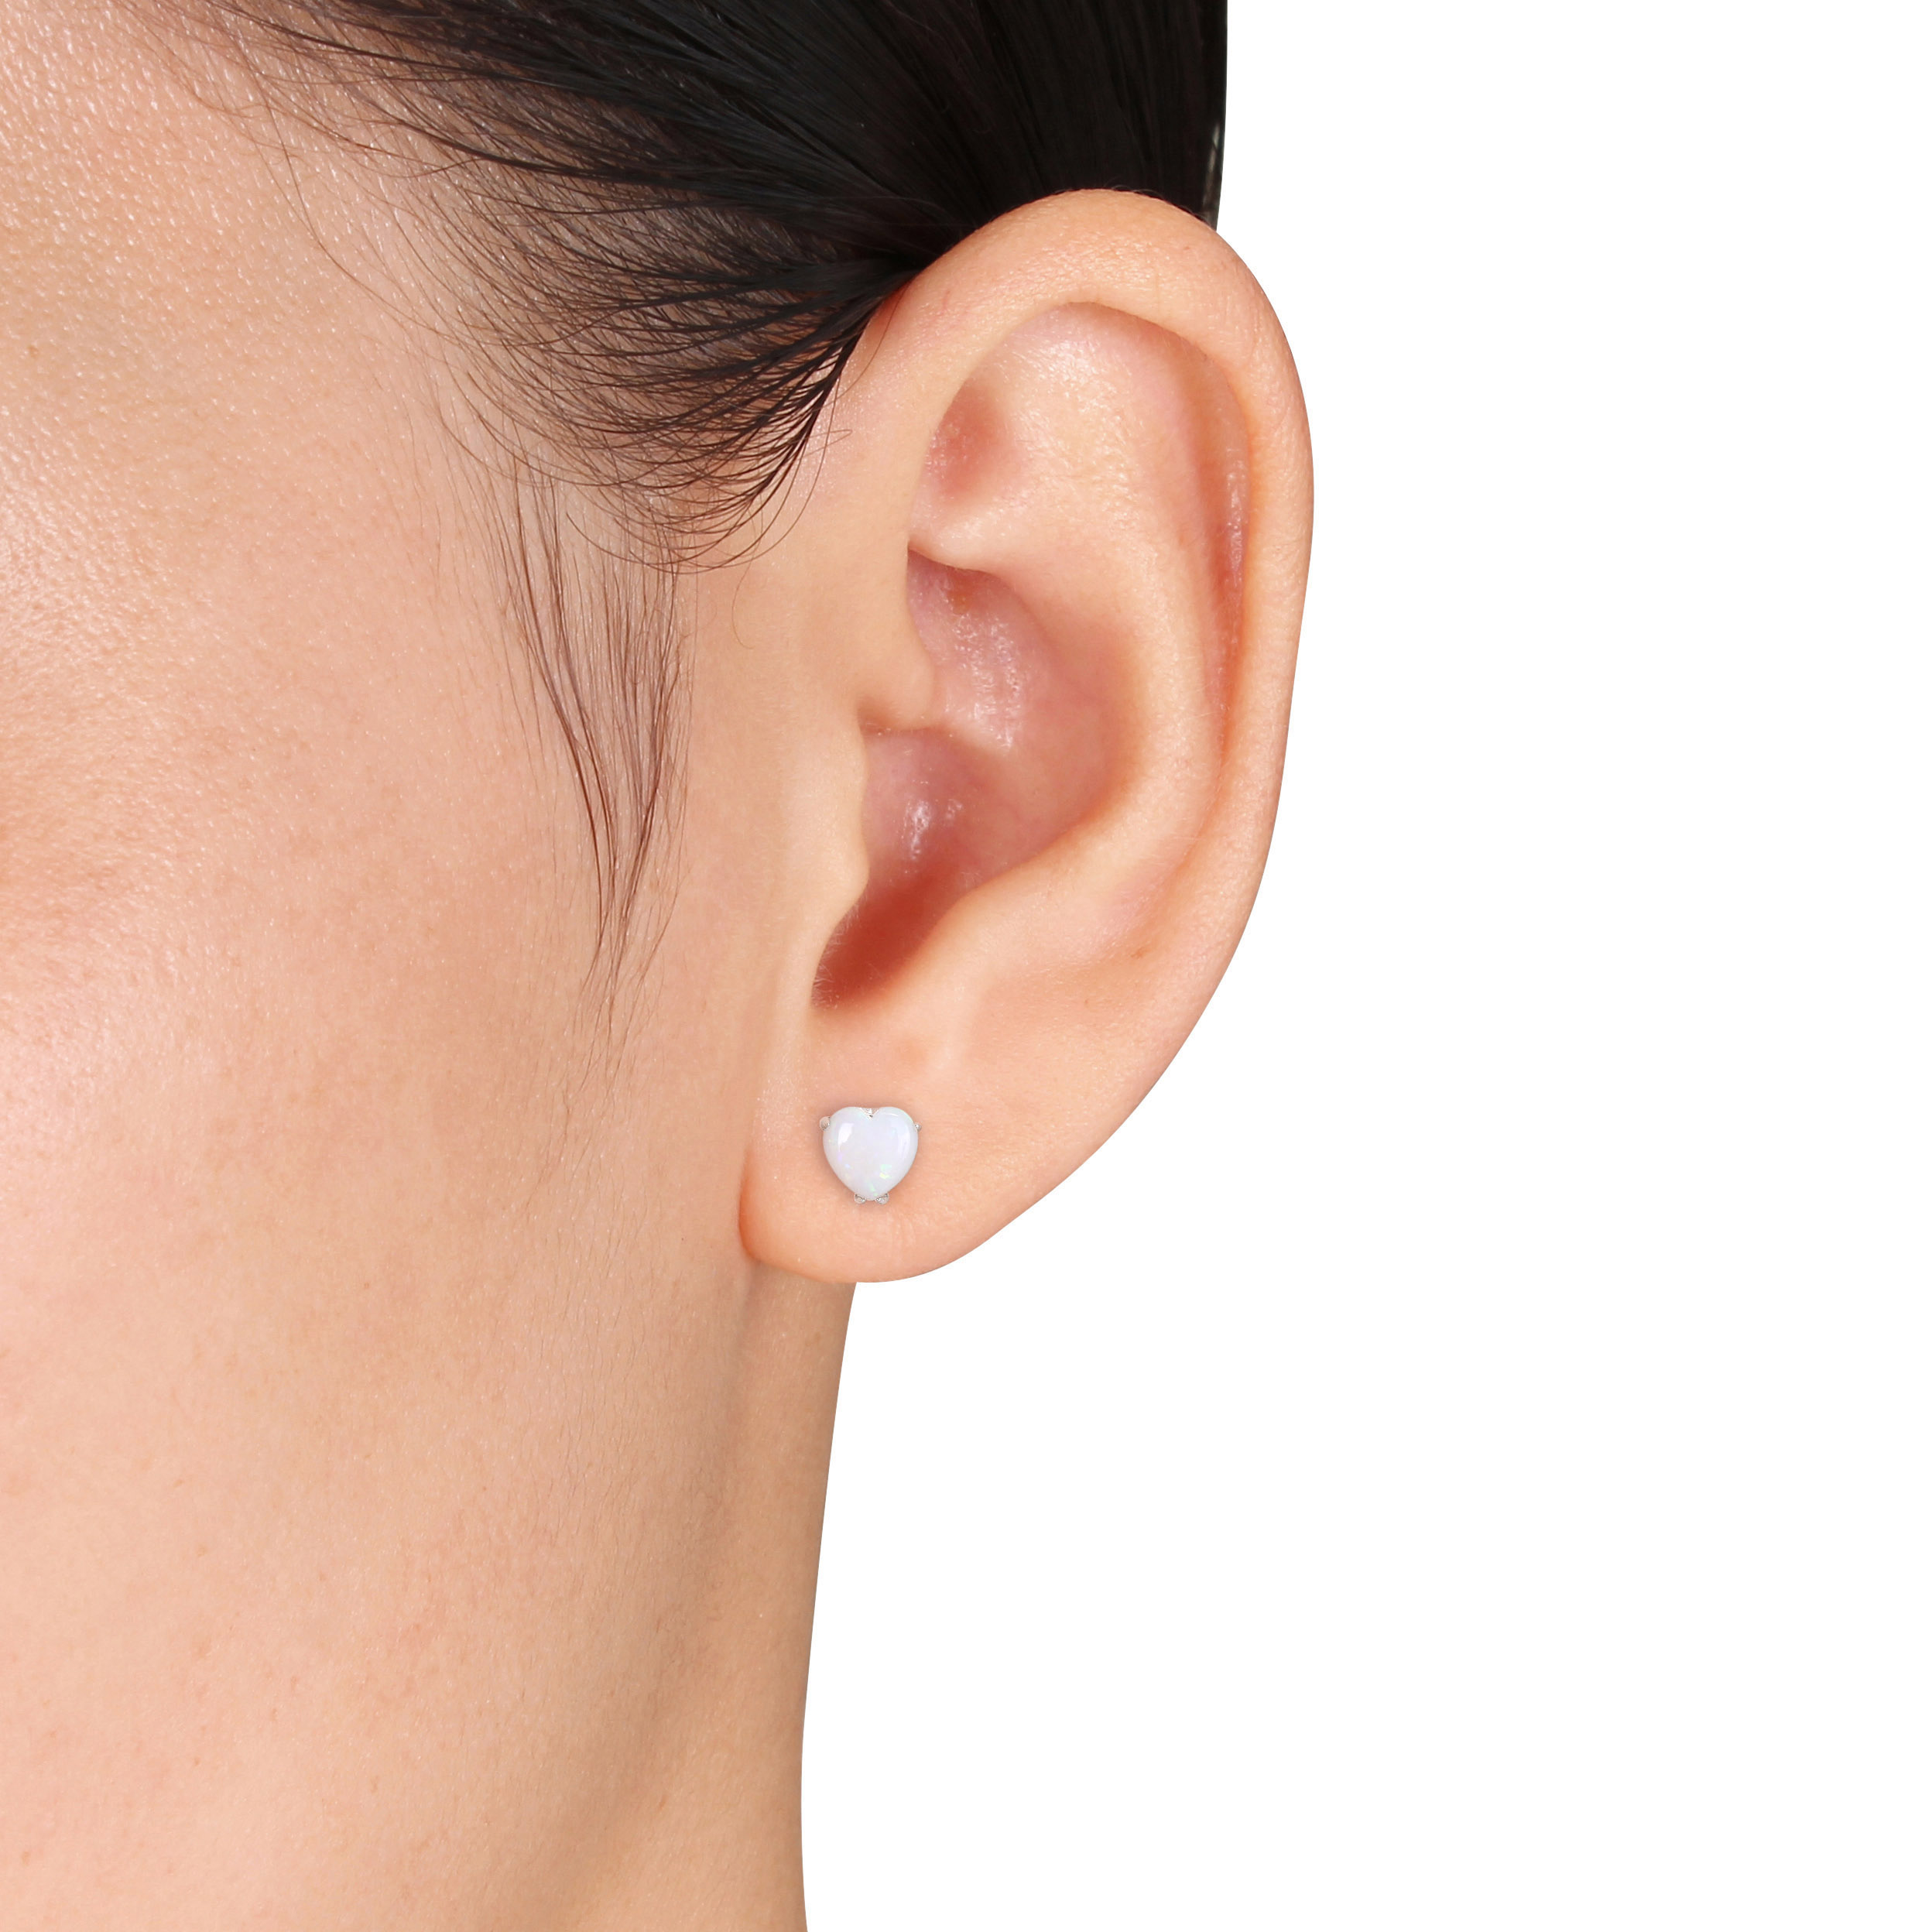 1 CT TGW Heart Shape Opal Stud Earrings in Sterling Silver